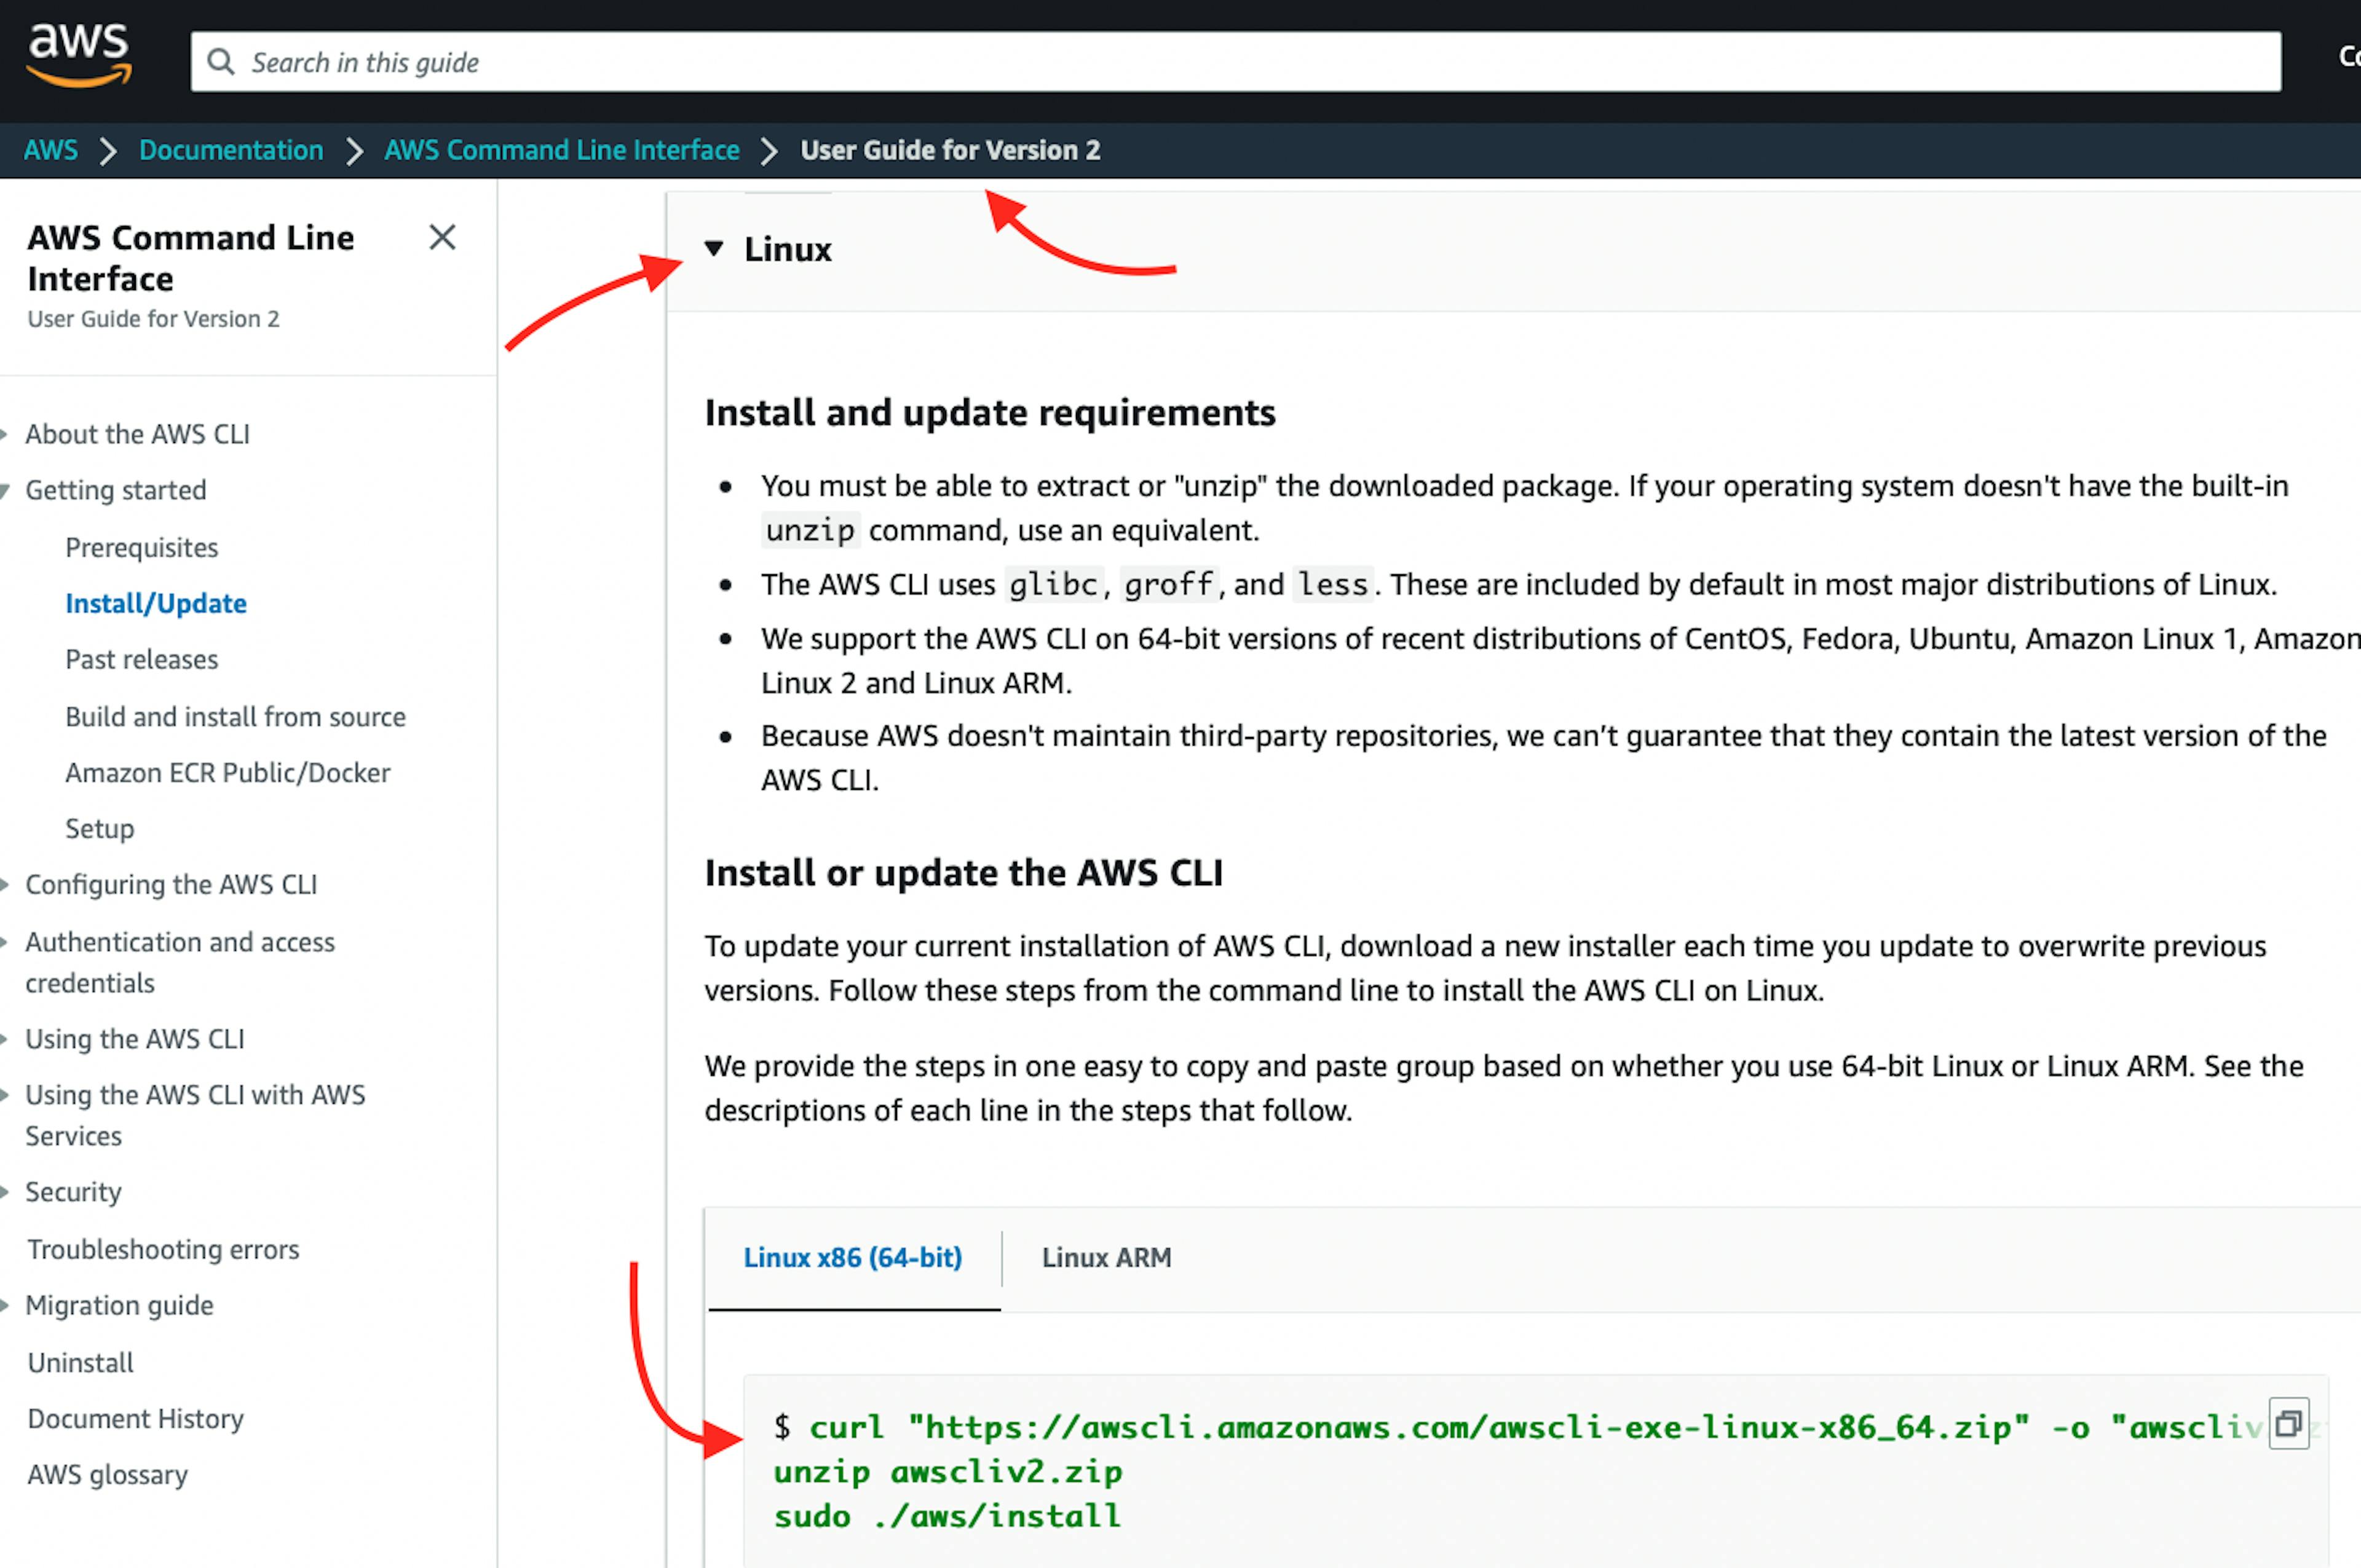 Sürüm 2 için Kullanıcı Kılavuzunu içeren AWS EC2 Sanal Sunucu örneği web sayfasının ekran görüntüsü